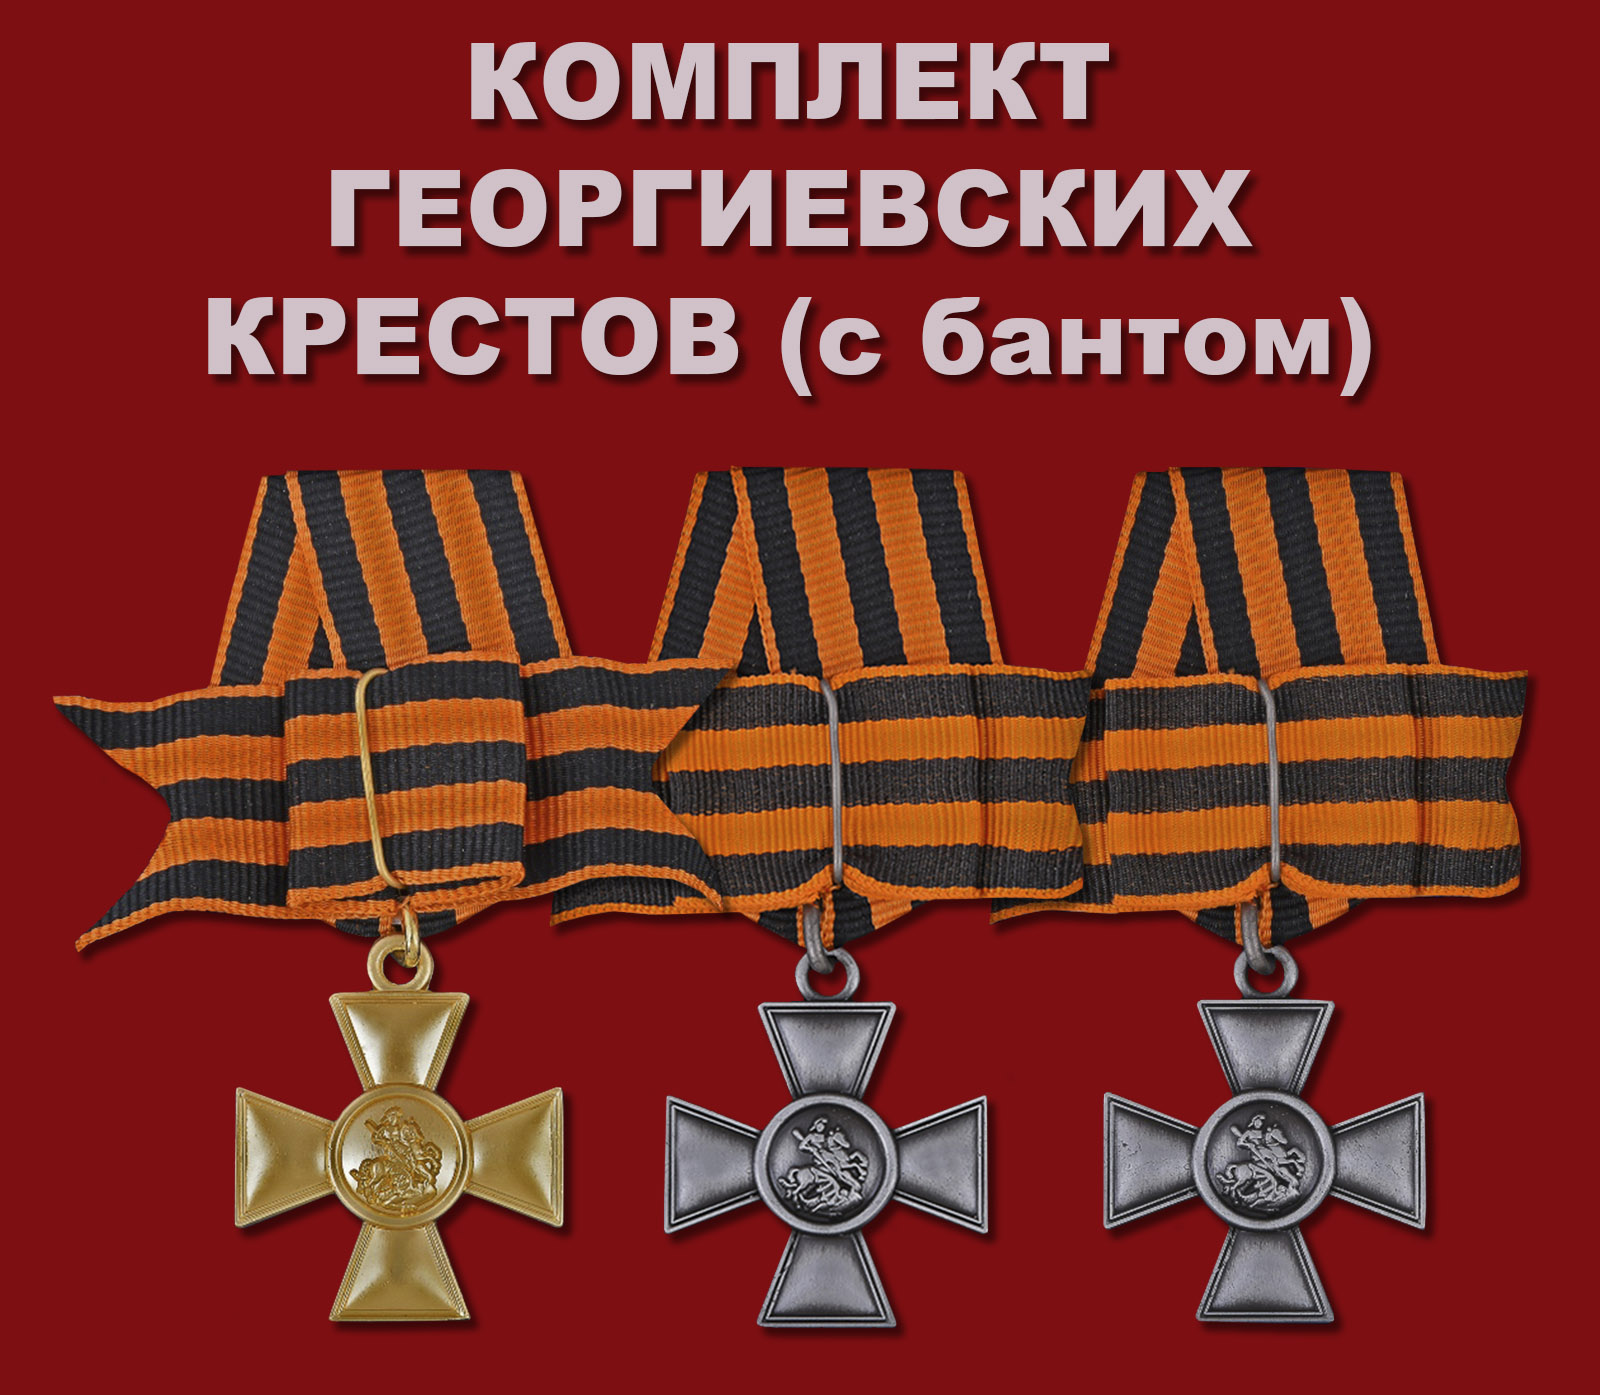 Купить комплект Георгиевских крестов (с бантом)